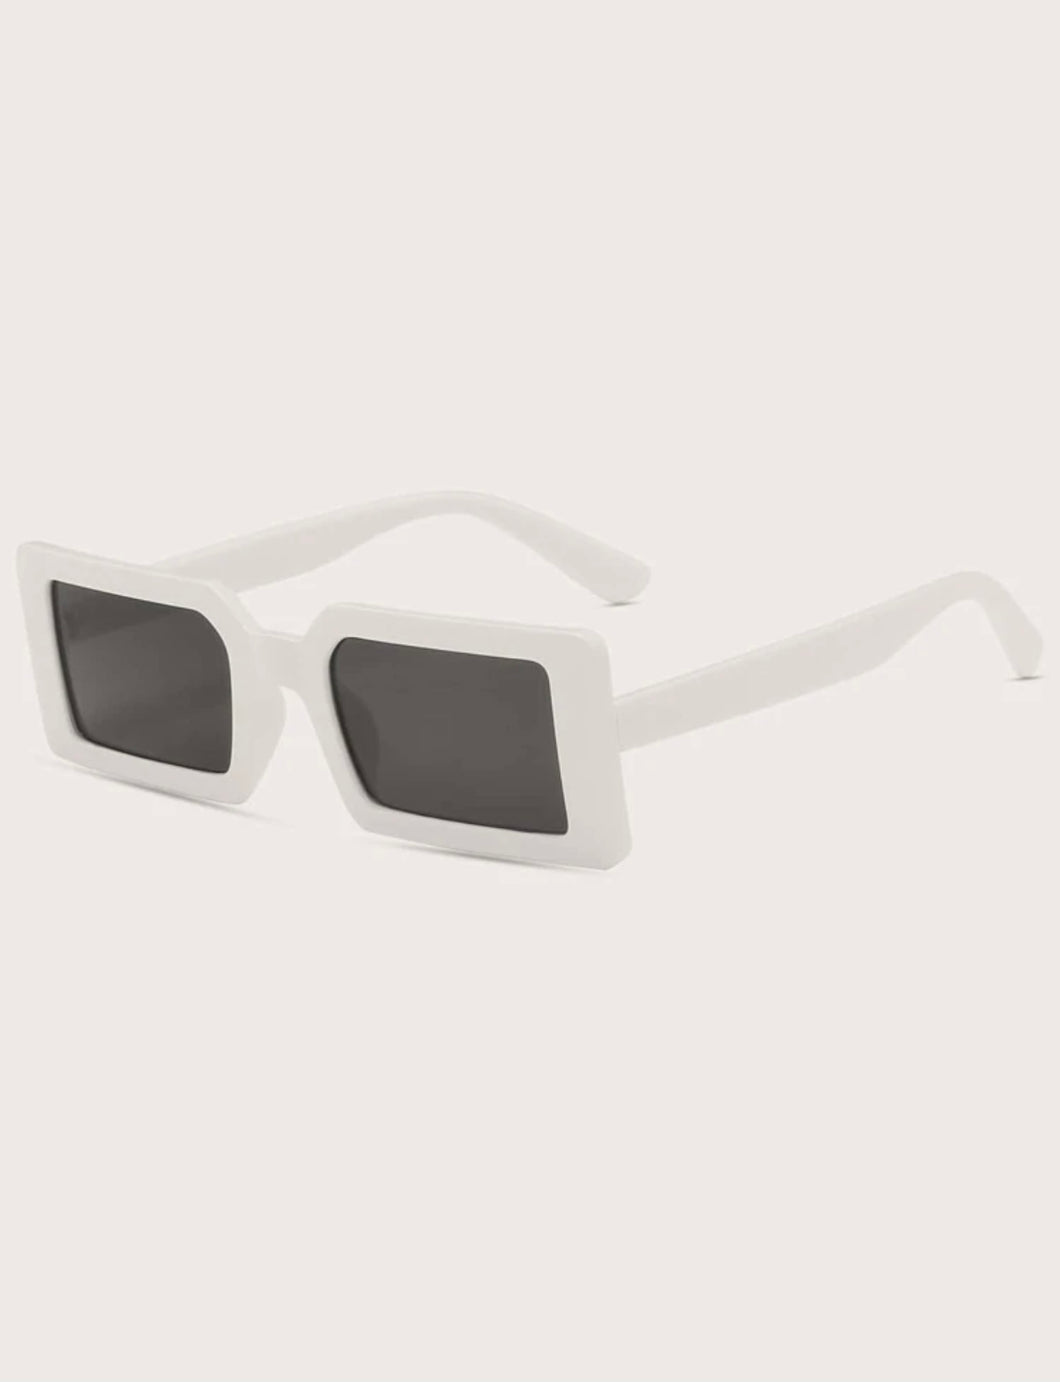 Malibu Sunglasses (White)